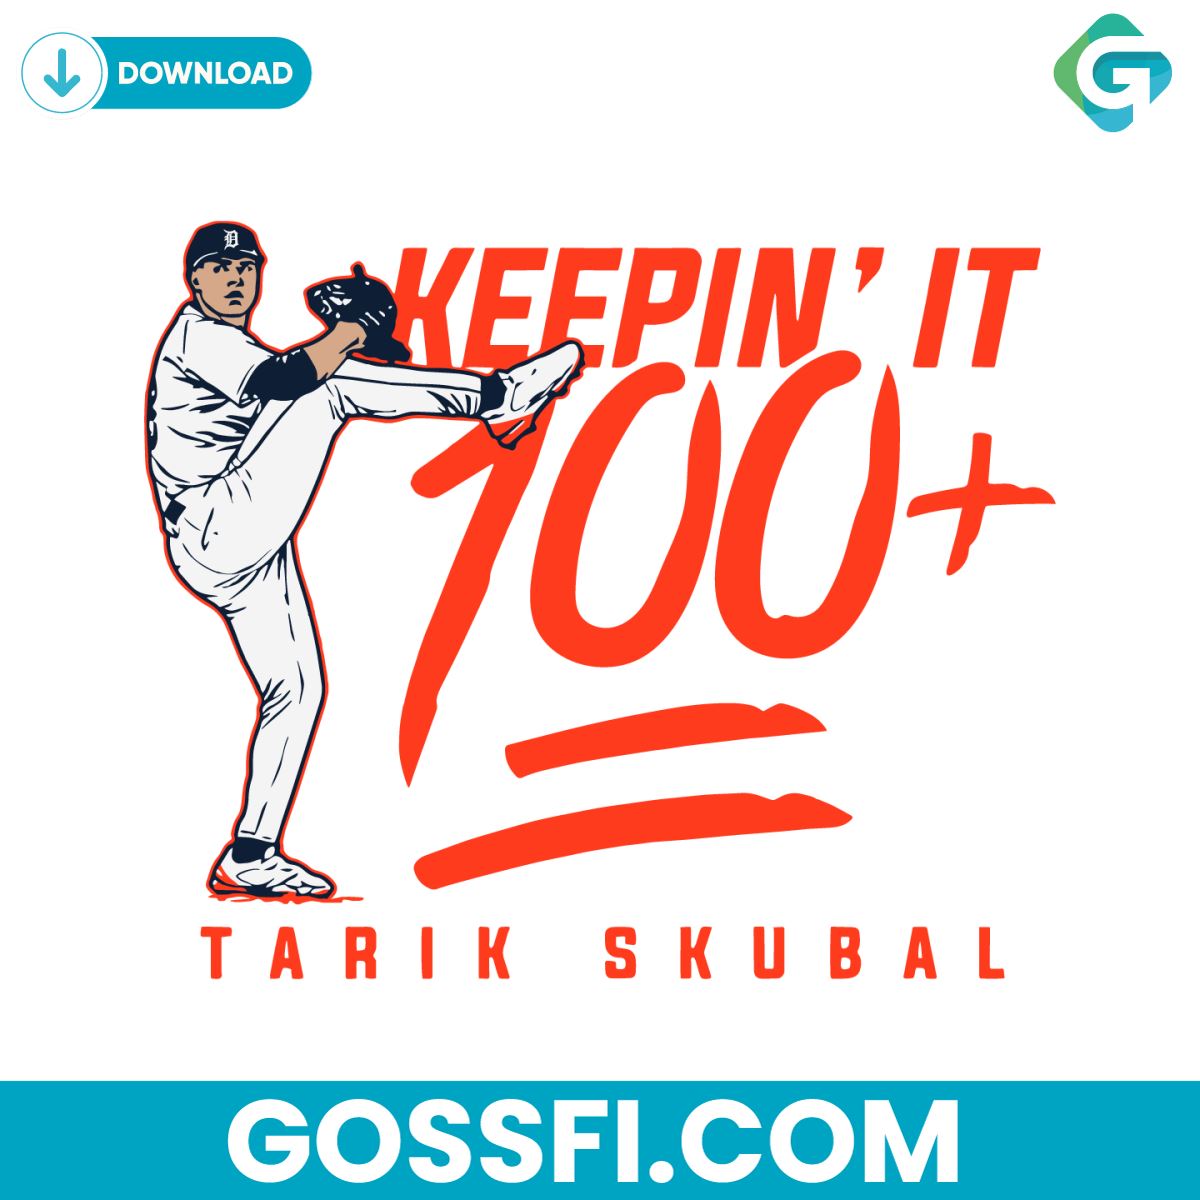 tarik-skubal-keepin-it-100-detroit-tigers-baseball-svg